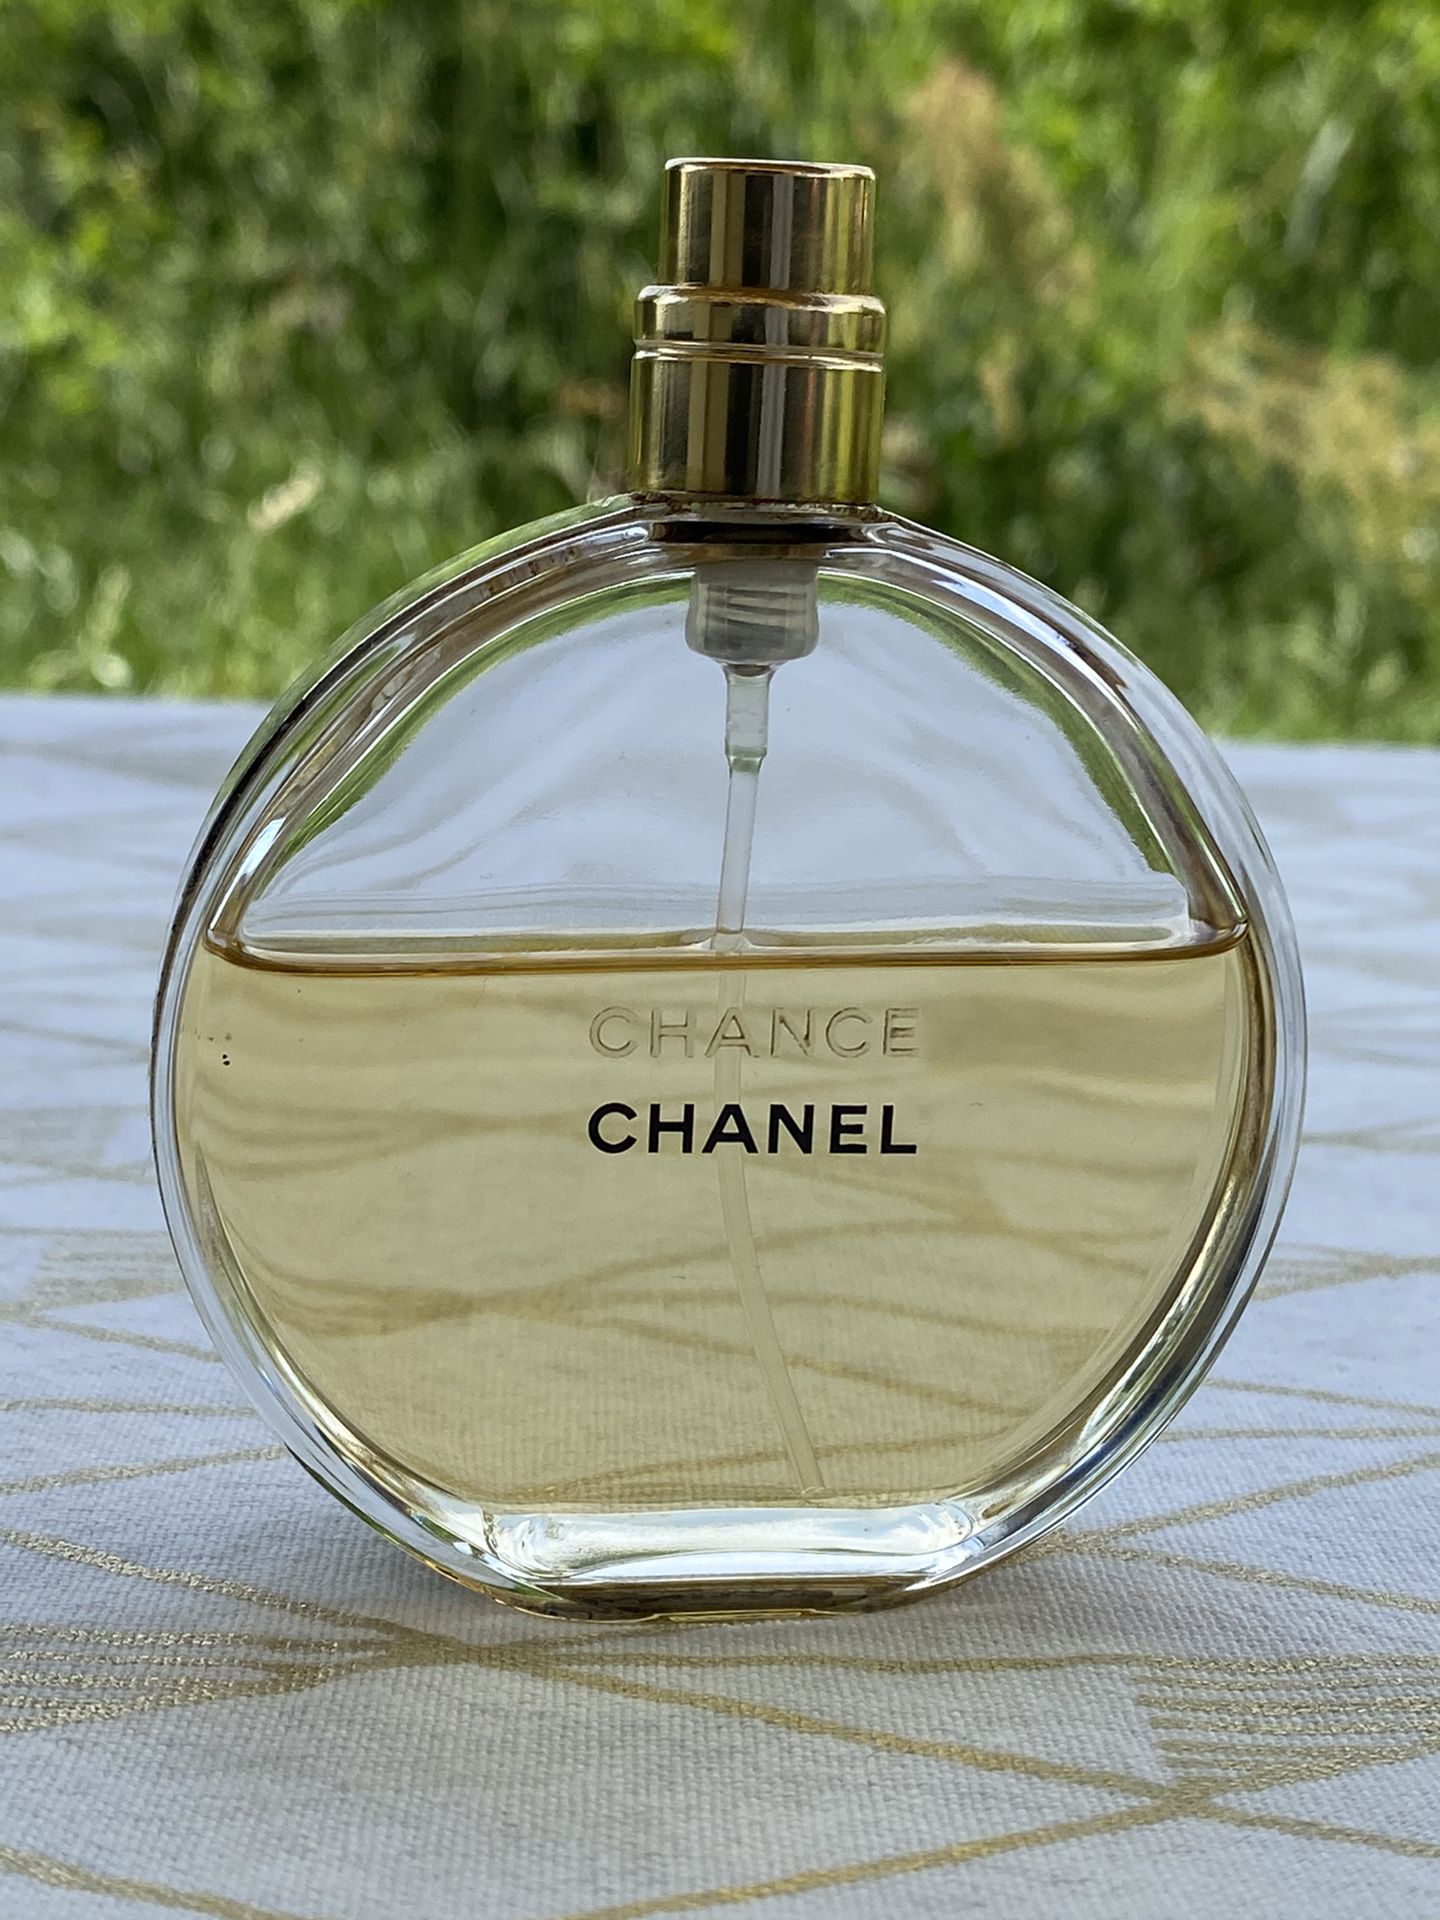 Chanel CHANCE Eau de Parfum Spray, 1.7-oz